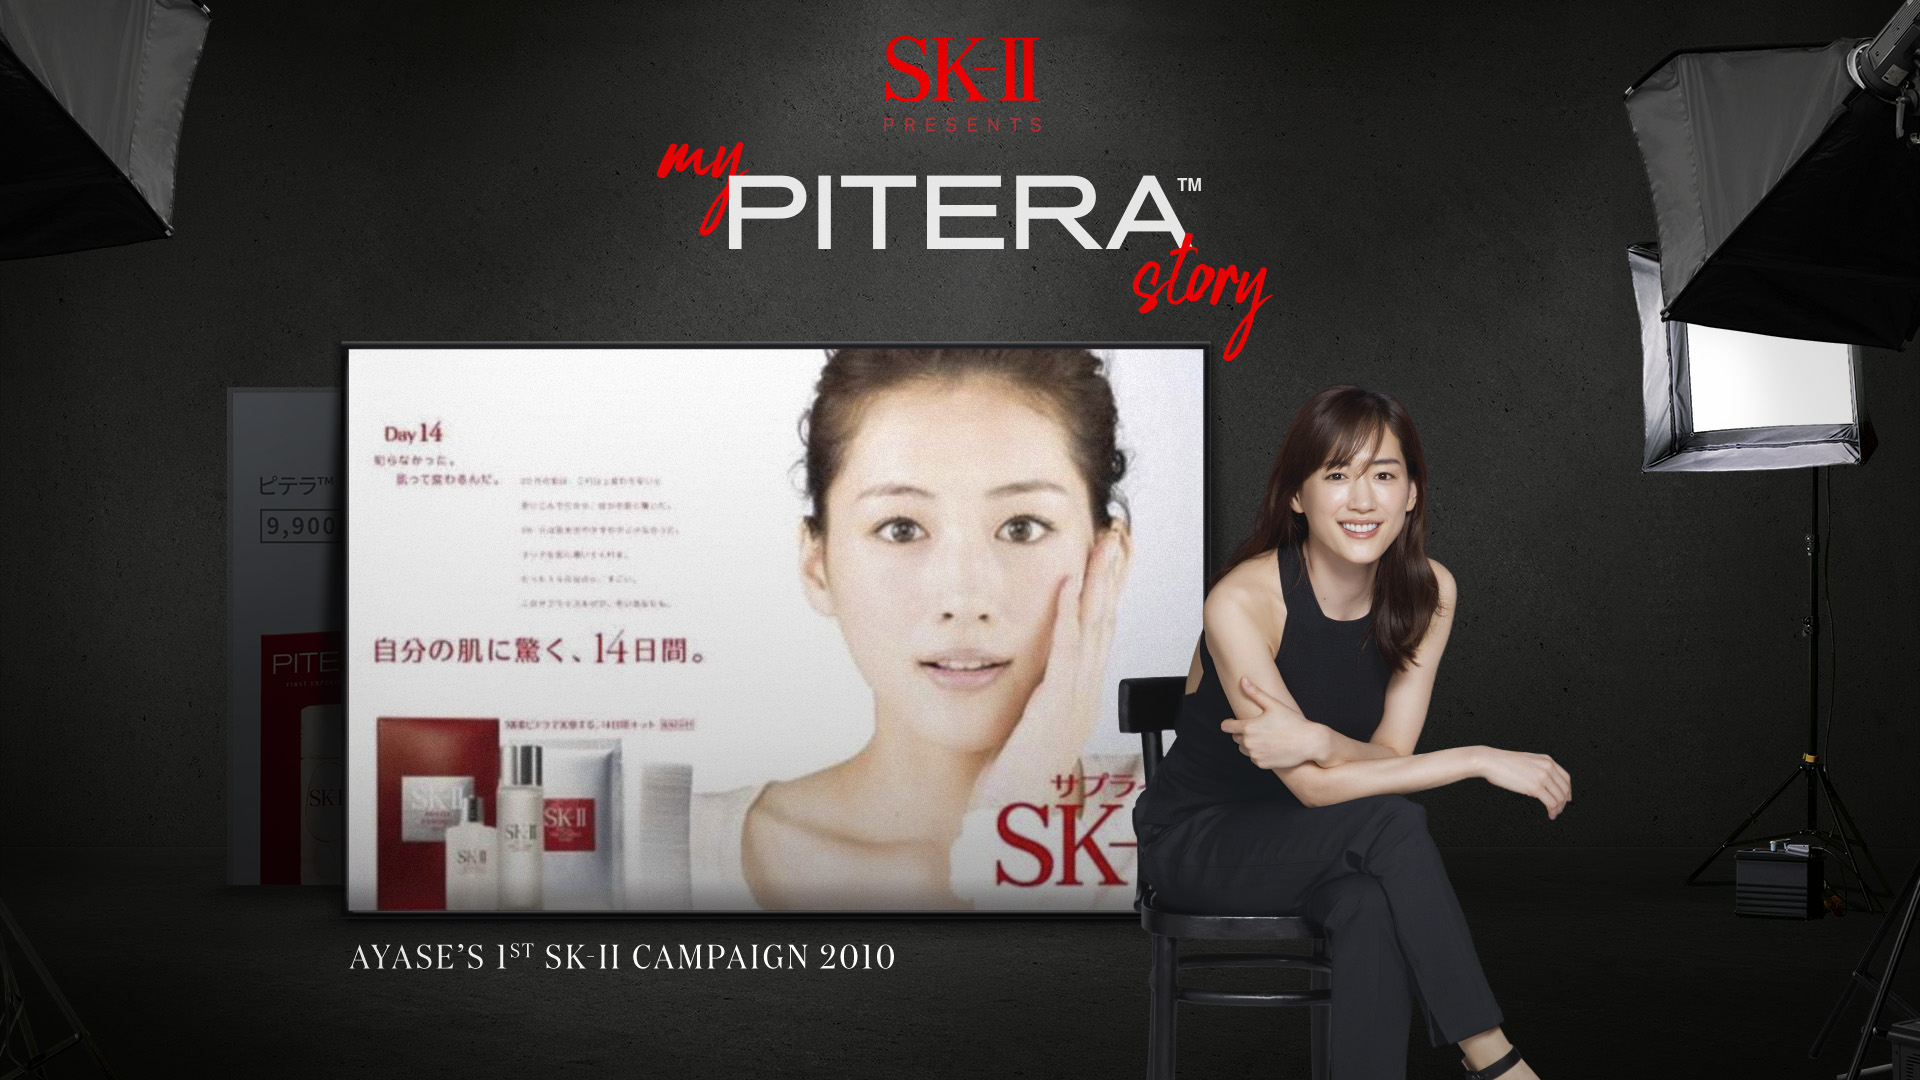 綾瀬はるか、10年以上前の代表作 SK-II CM作品をリメイク「私のピテラ